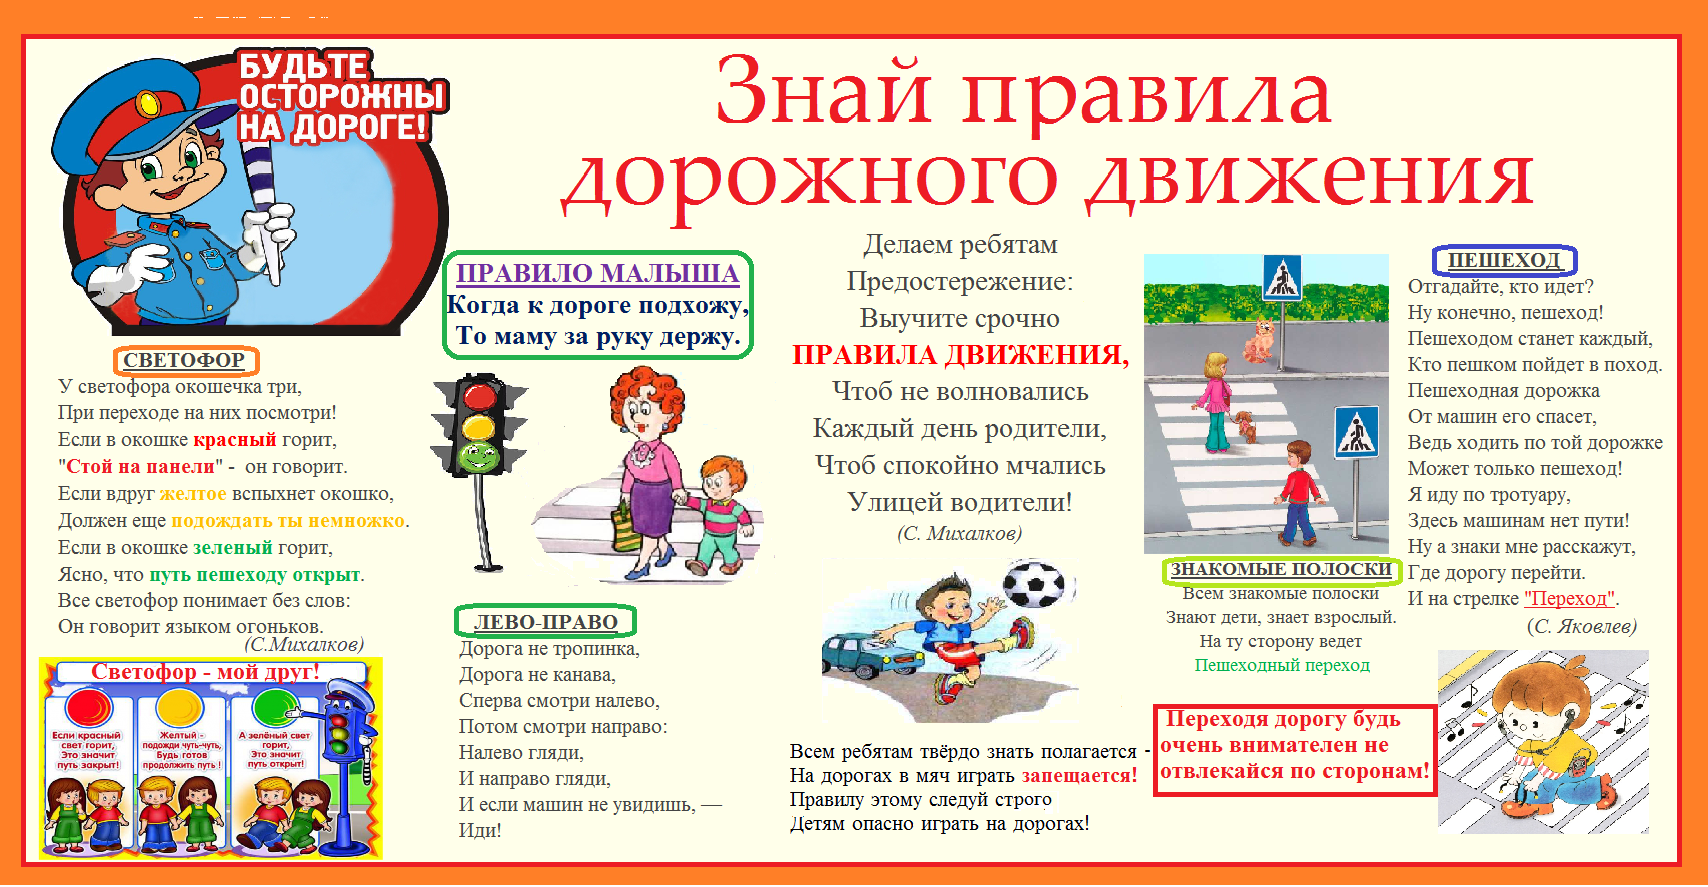 Полное правило пдд. Правила дорожного движения для детей. Плакат по правилам дорожного движения для школьников. Плакат по правилам дорожного движения для детей. ПДД правила дорожного движения.